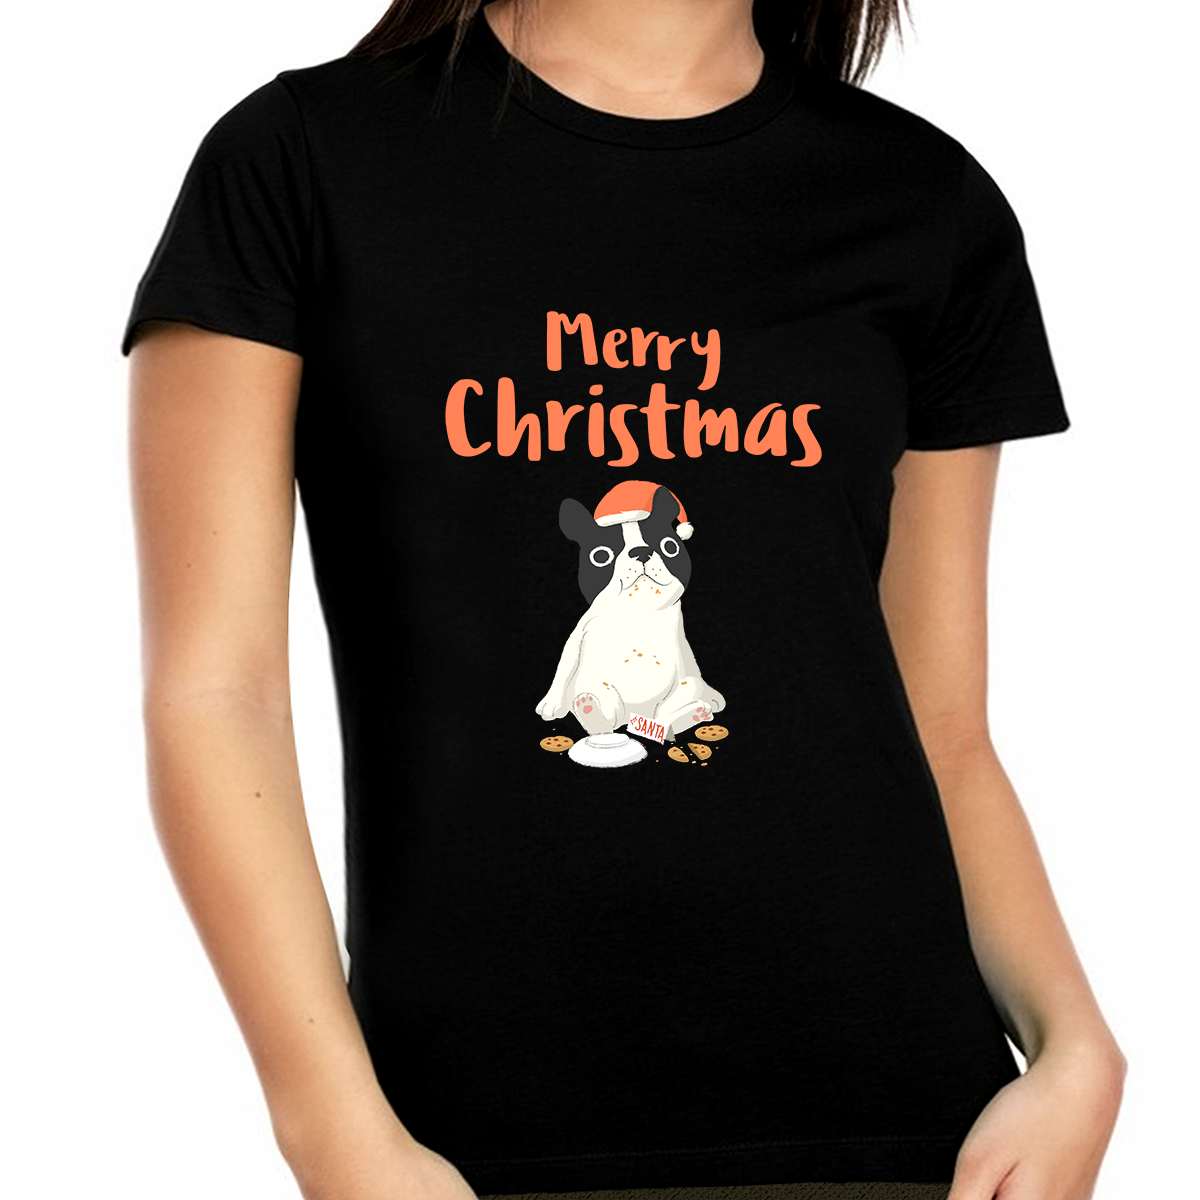 Funny Dog Plus Size Christmas Pajamas Funny Plus Size Christmas Shirts for Women Plus Size Christmas Shirt